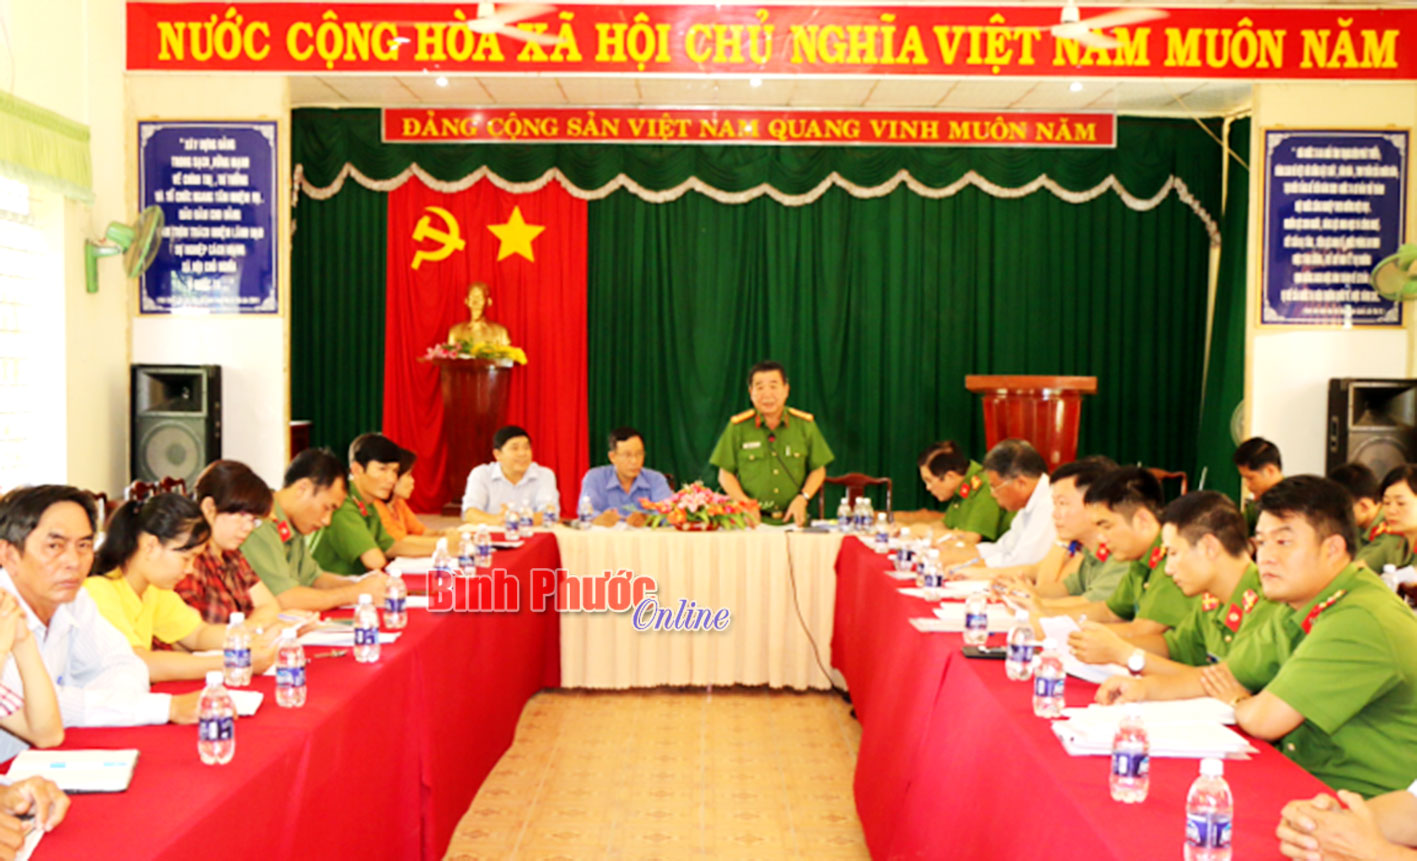 Đại tá Nguyễn Hiền Dũng, Phó Cục trưởng Cục Tham mưu cảnh sát, Bộ Công an phát biểu tại buổi khảo sát